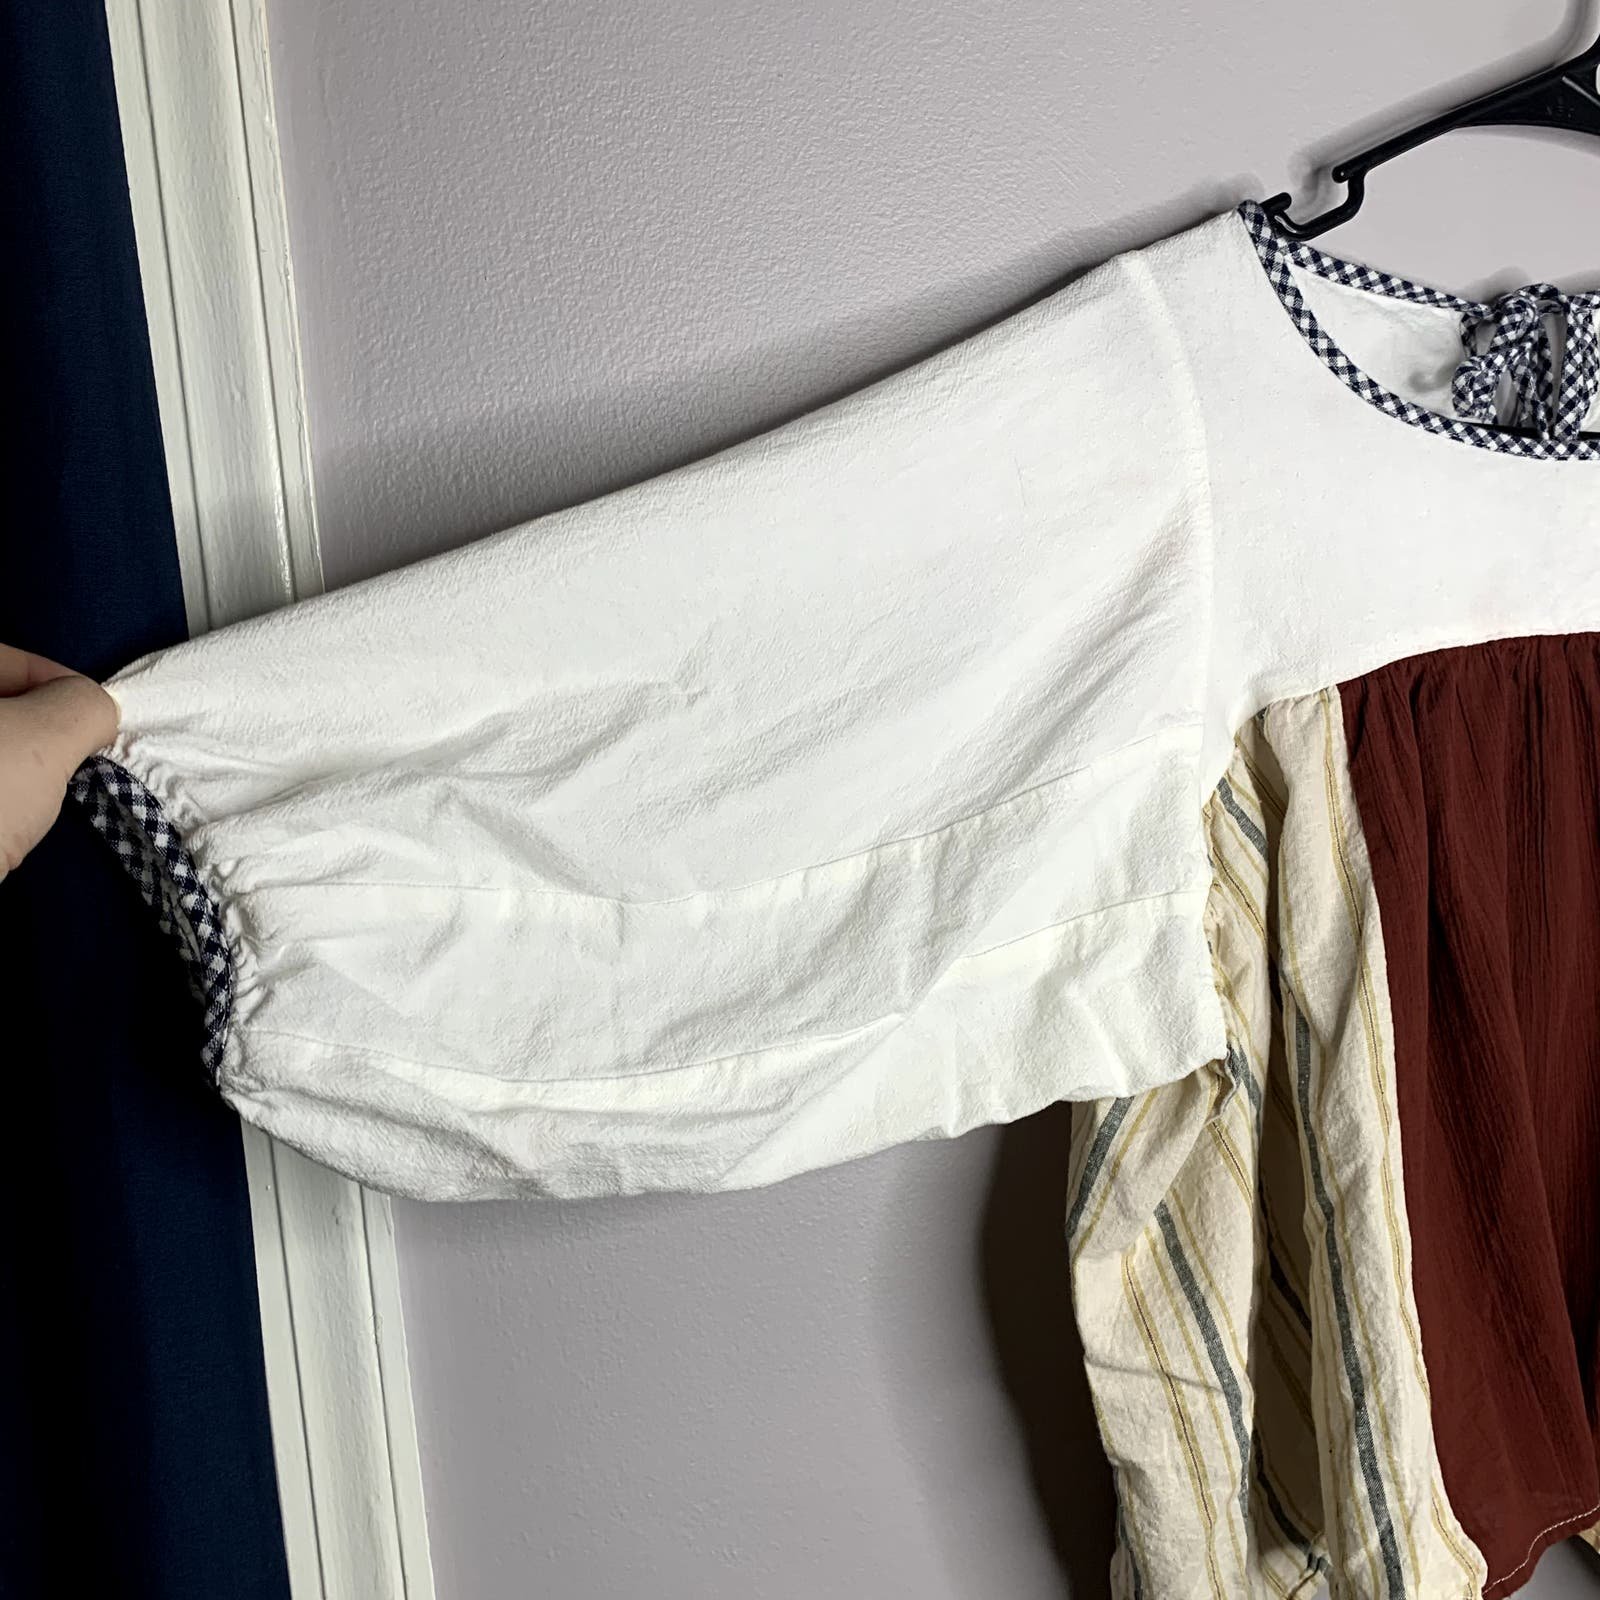 the Lowest price La Réunion patchwork cotton linen mix fabric peasant blouse women´s approx sz M K5SjnYNpG Online Exclusive